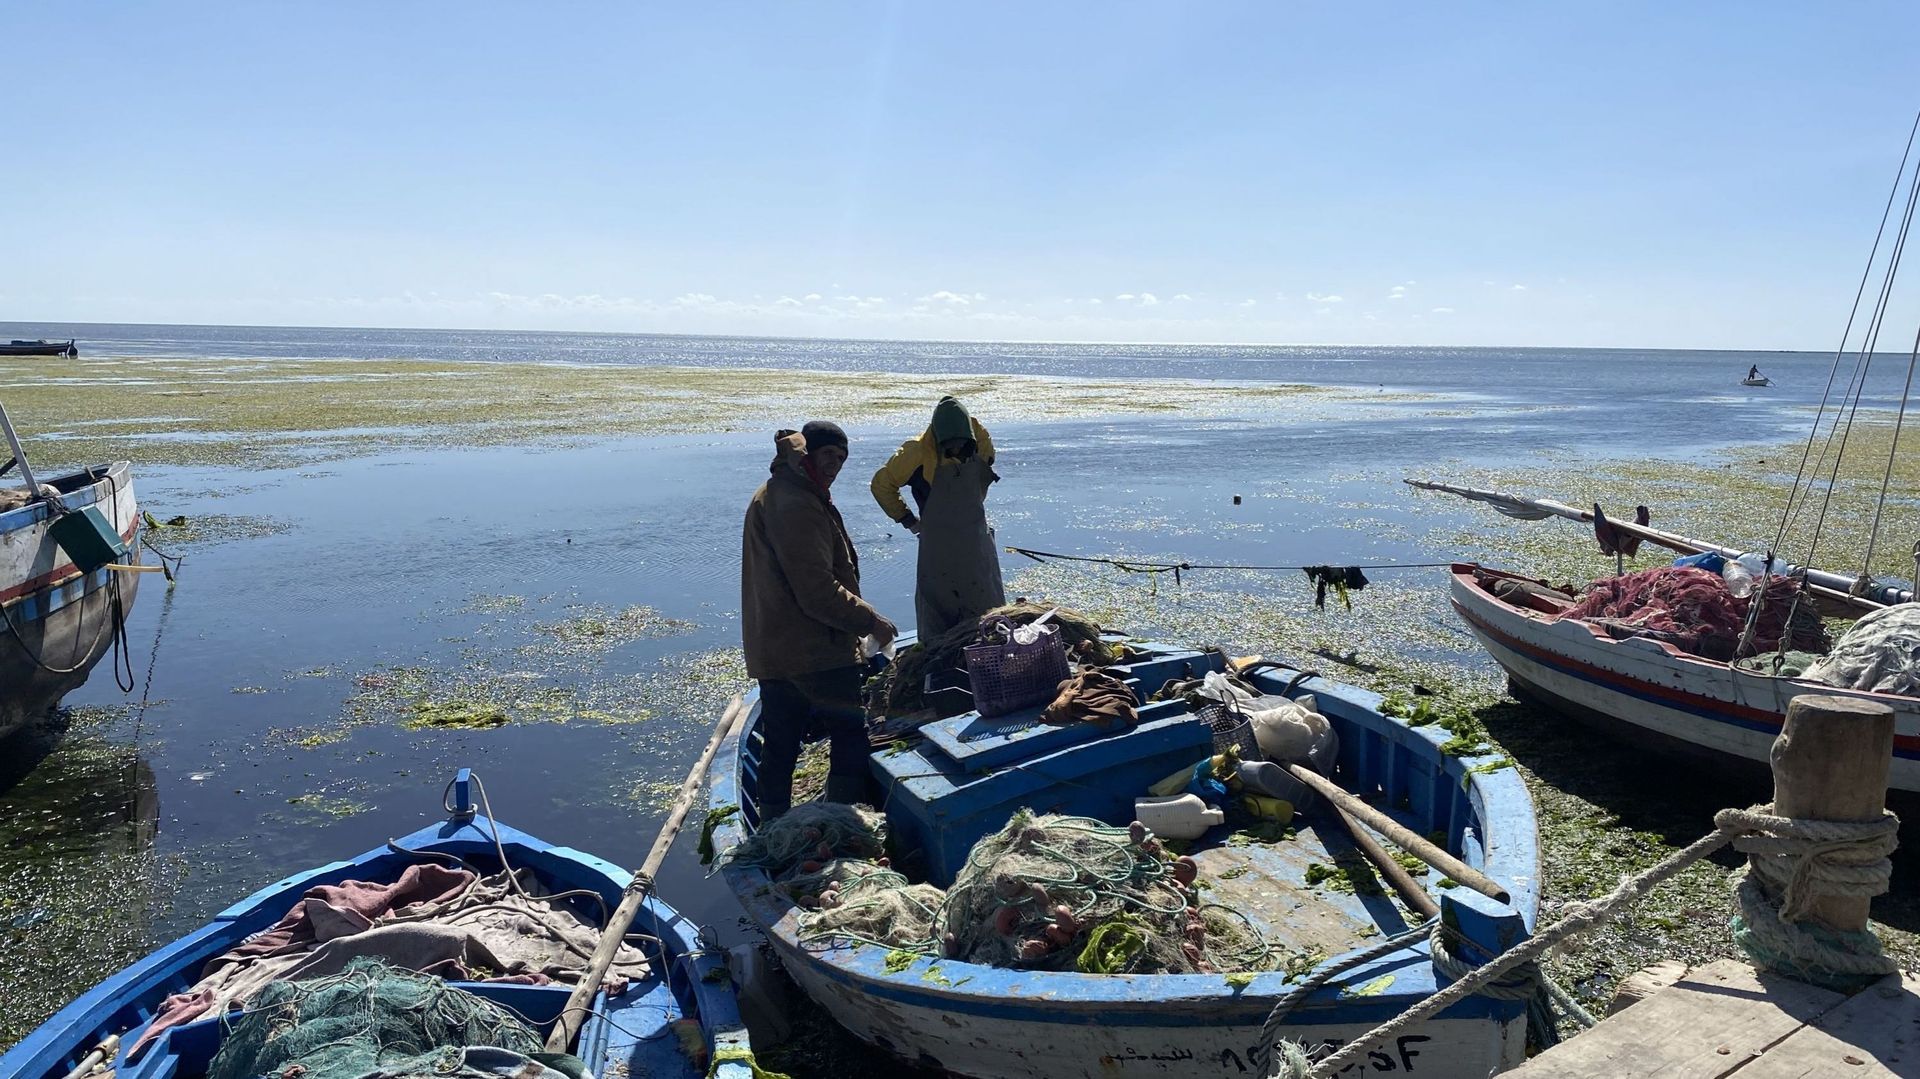 Les pêcheurs sont en première ligne face au drame de la migration clandestine.